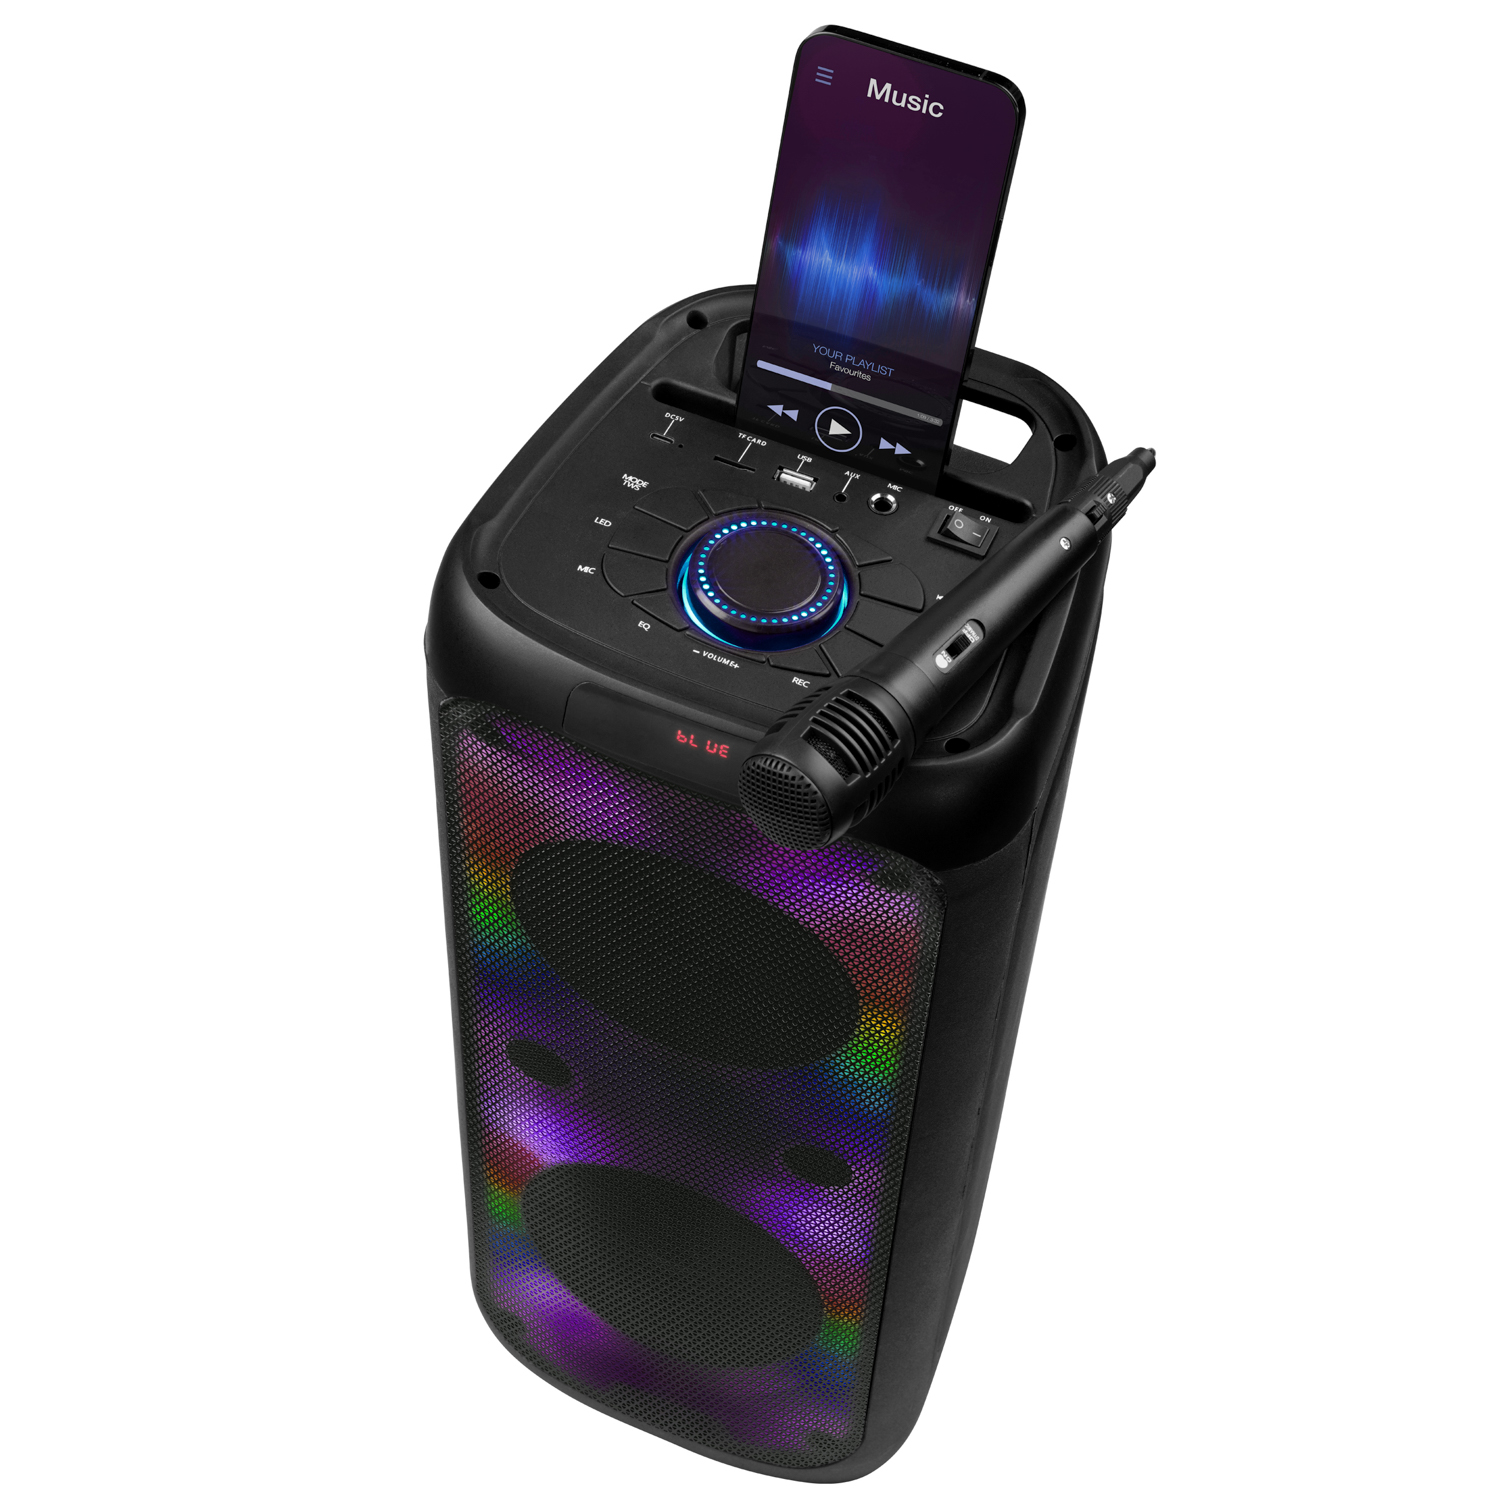 Cassa speaker bluetooth con microfono, luci led e portacellulare